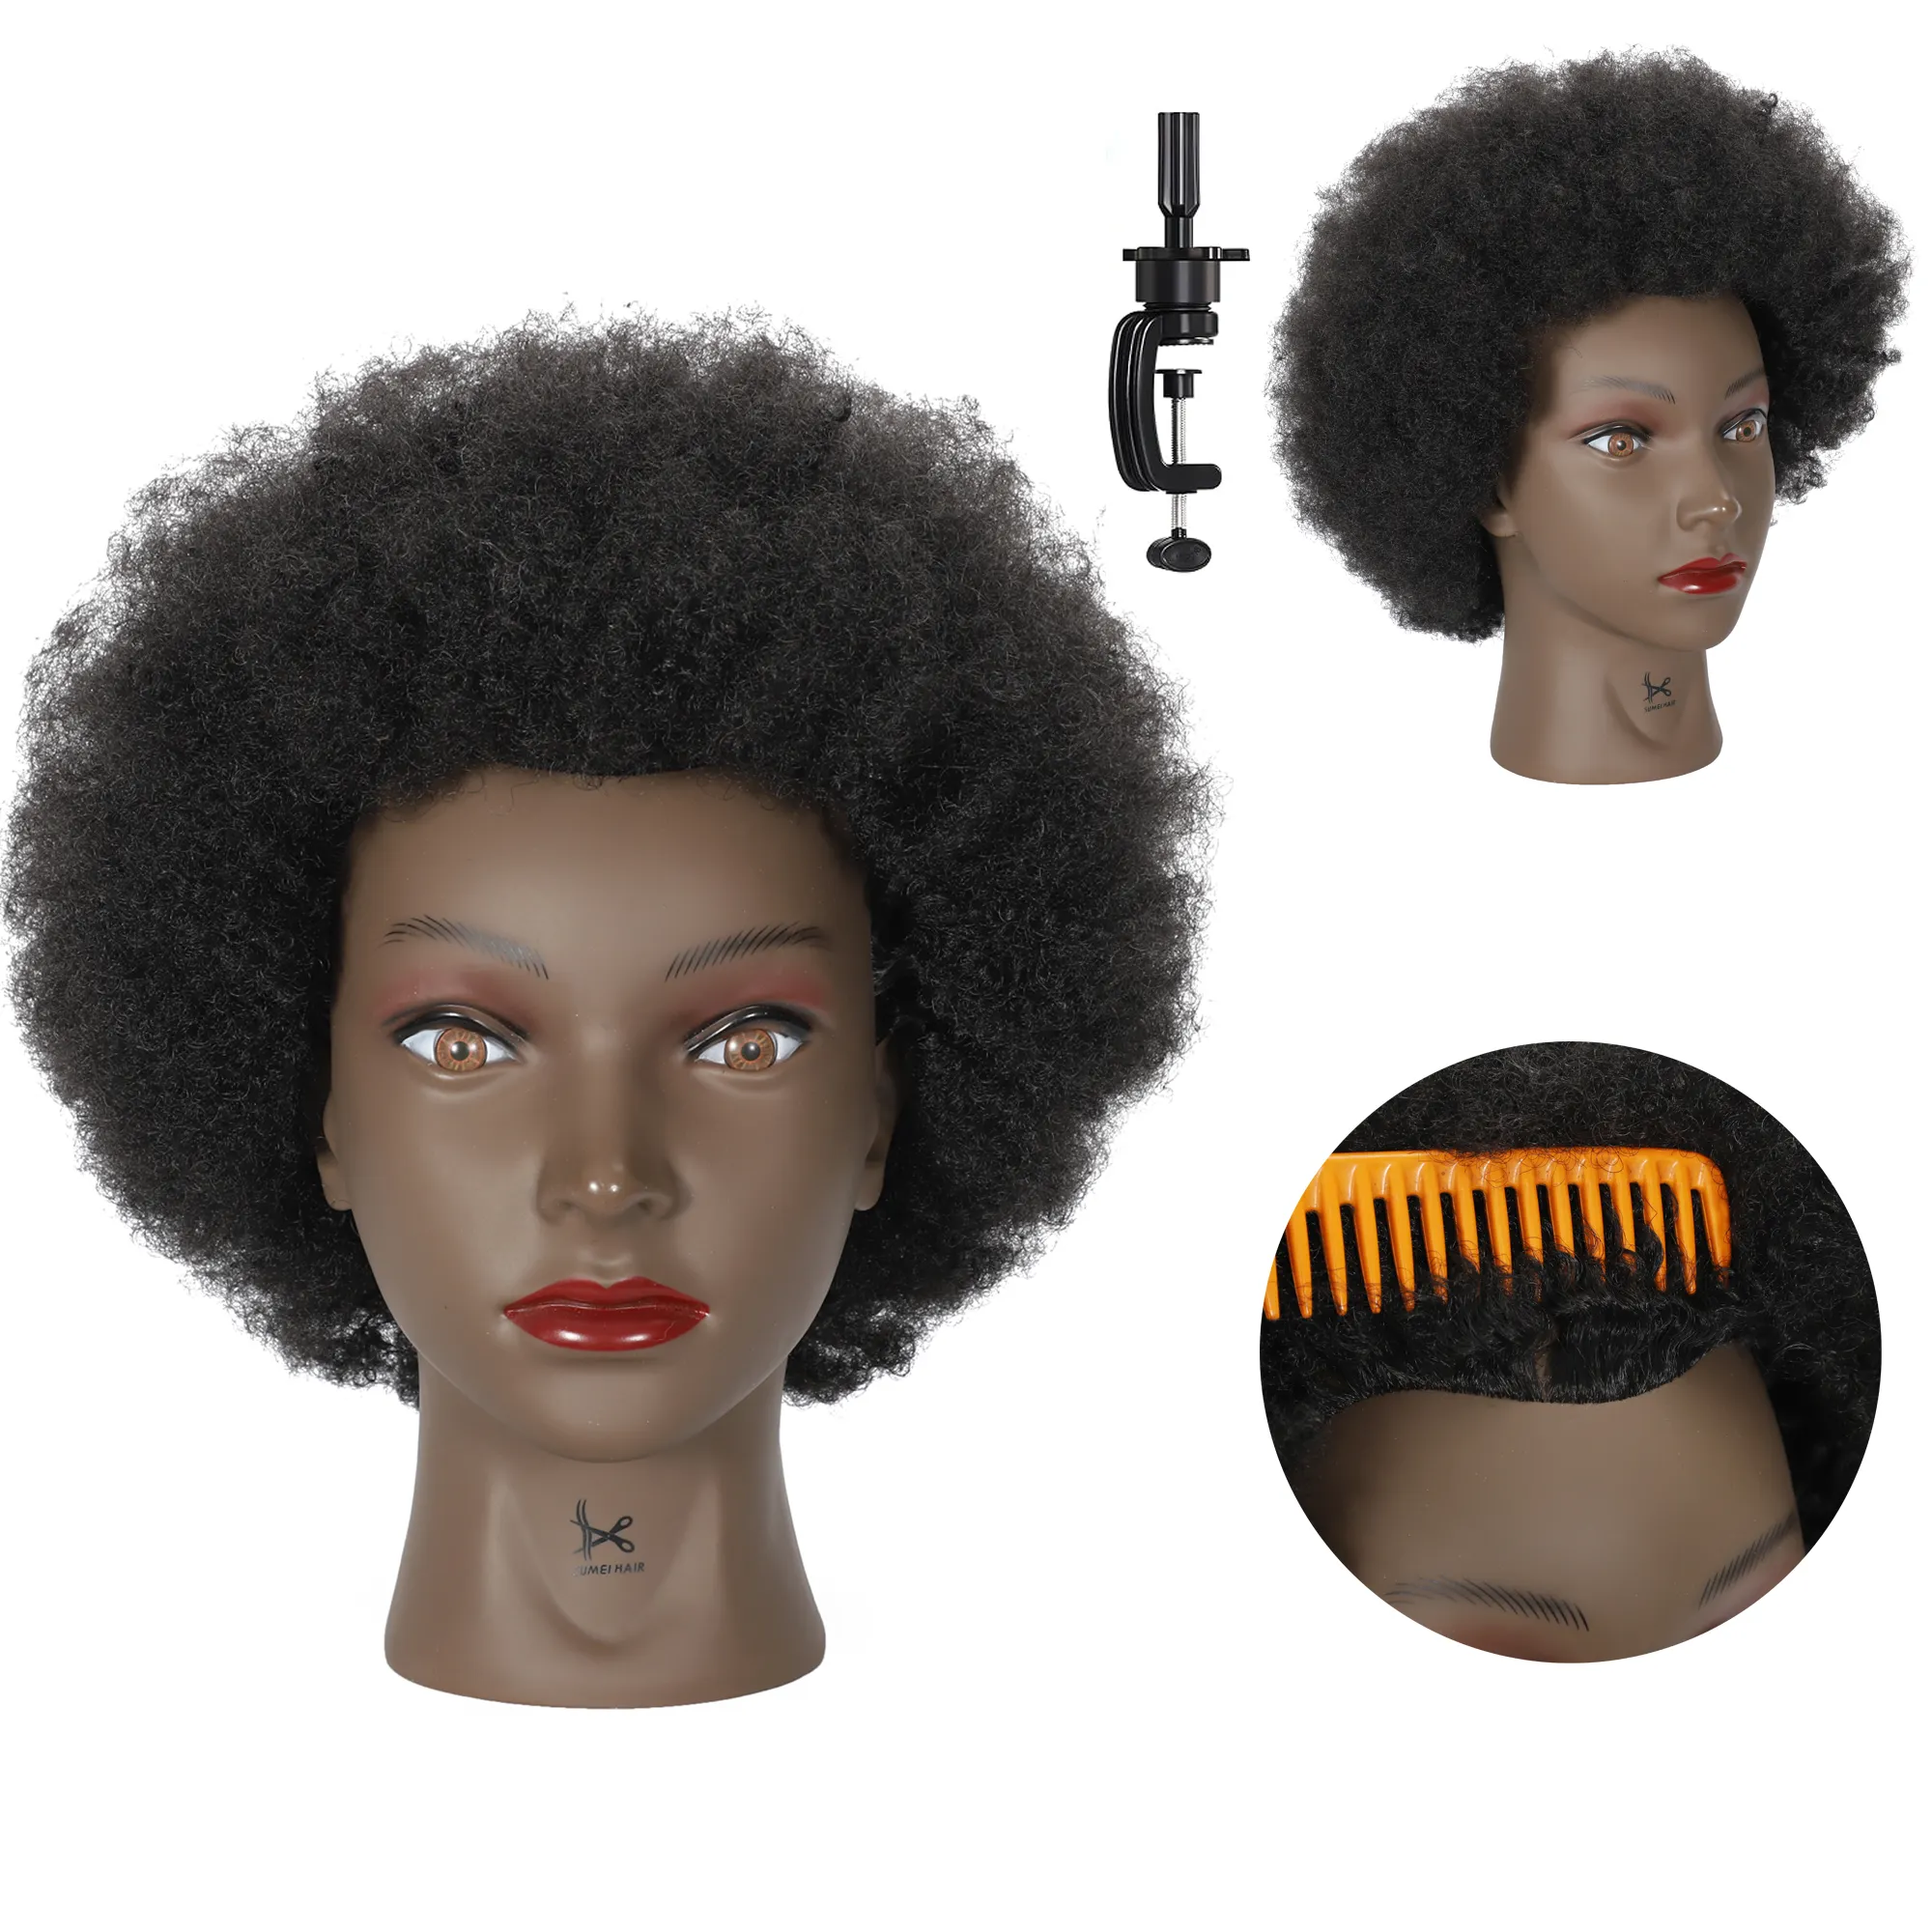 All'ingrosso manichino capelli umani cosmetologia testa di bambola manichino formazione capelli Afro-americani Afro Texture capelli